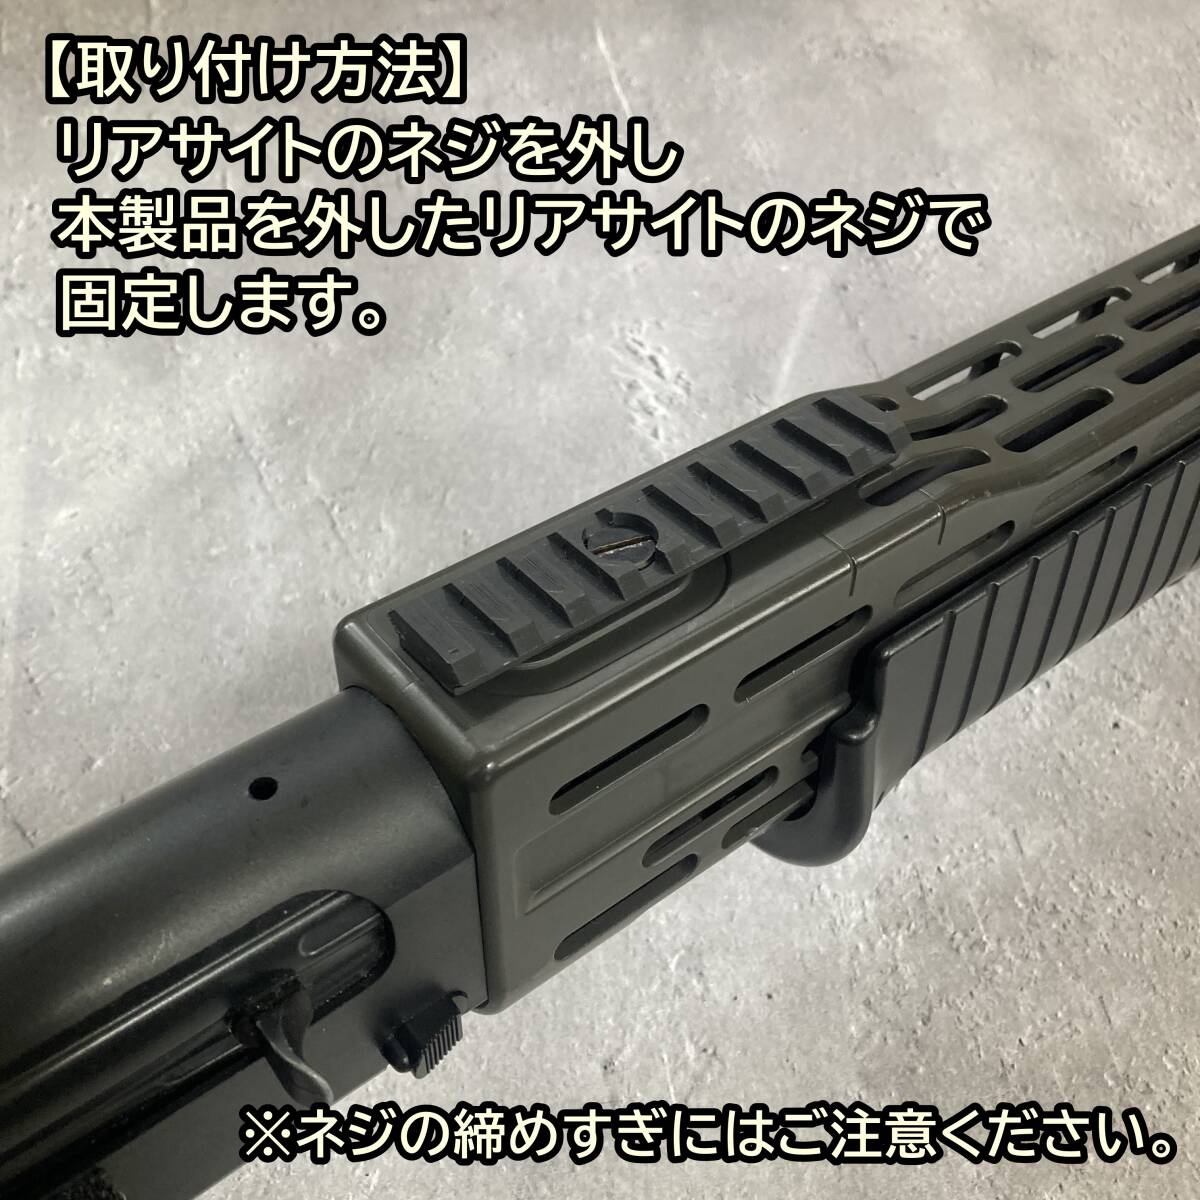 東京マルイ スパス12 対応 20mm リアサイトマウント ショットガン SPAS12